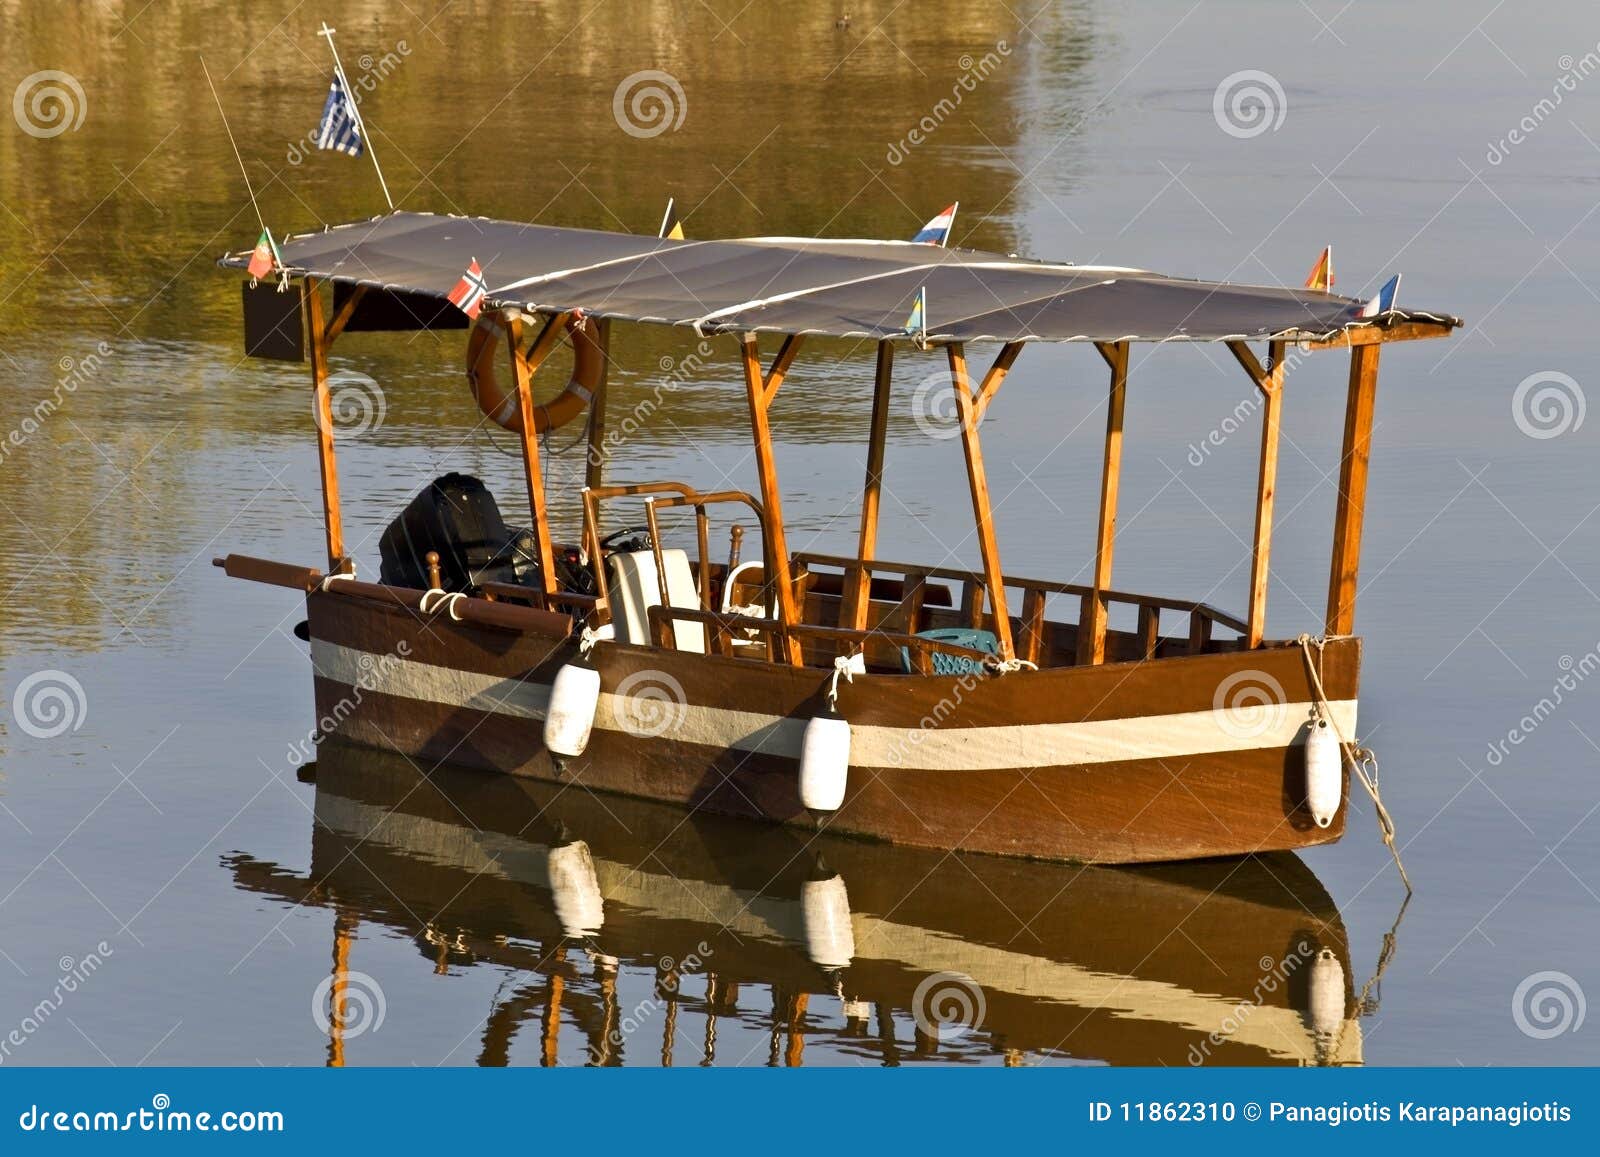 Greek wooden boat plans